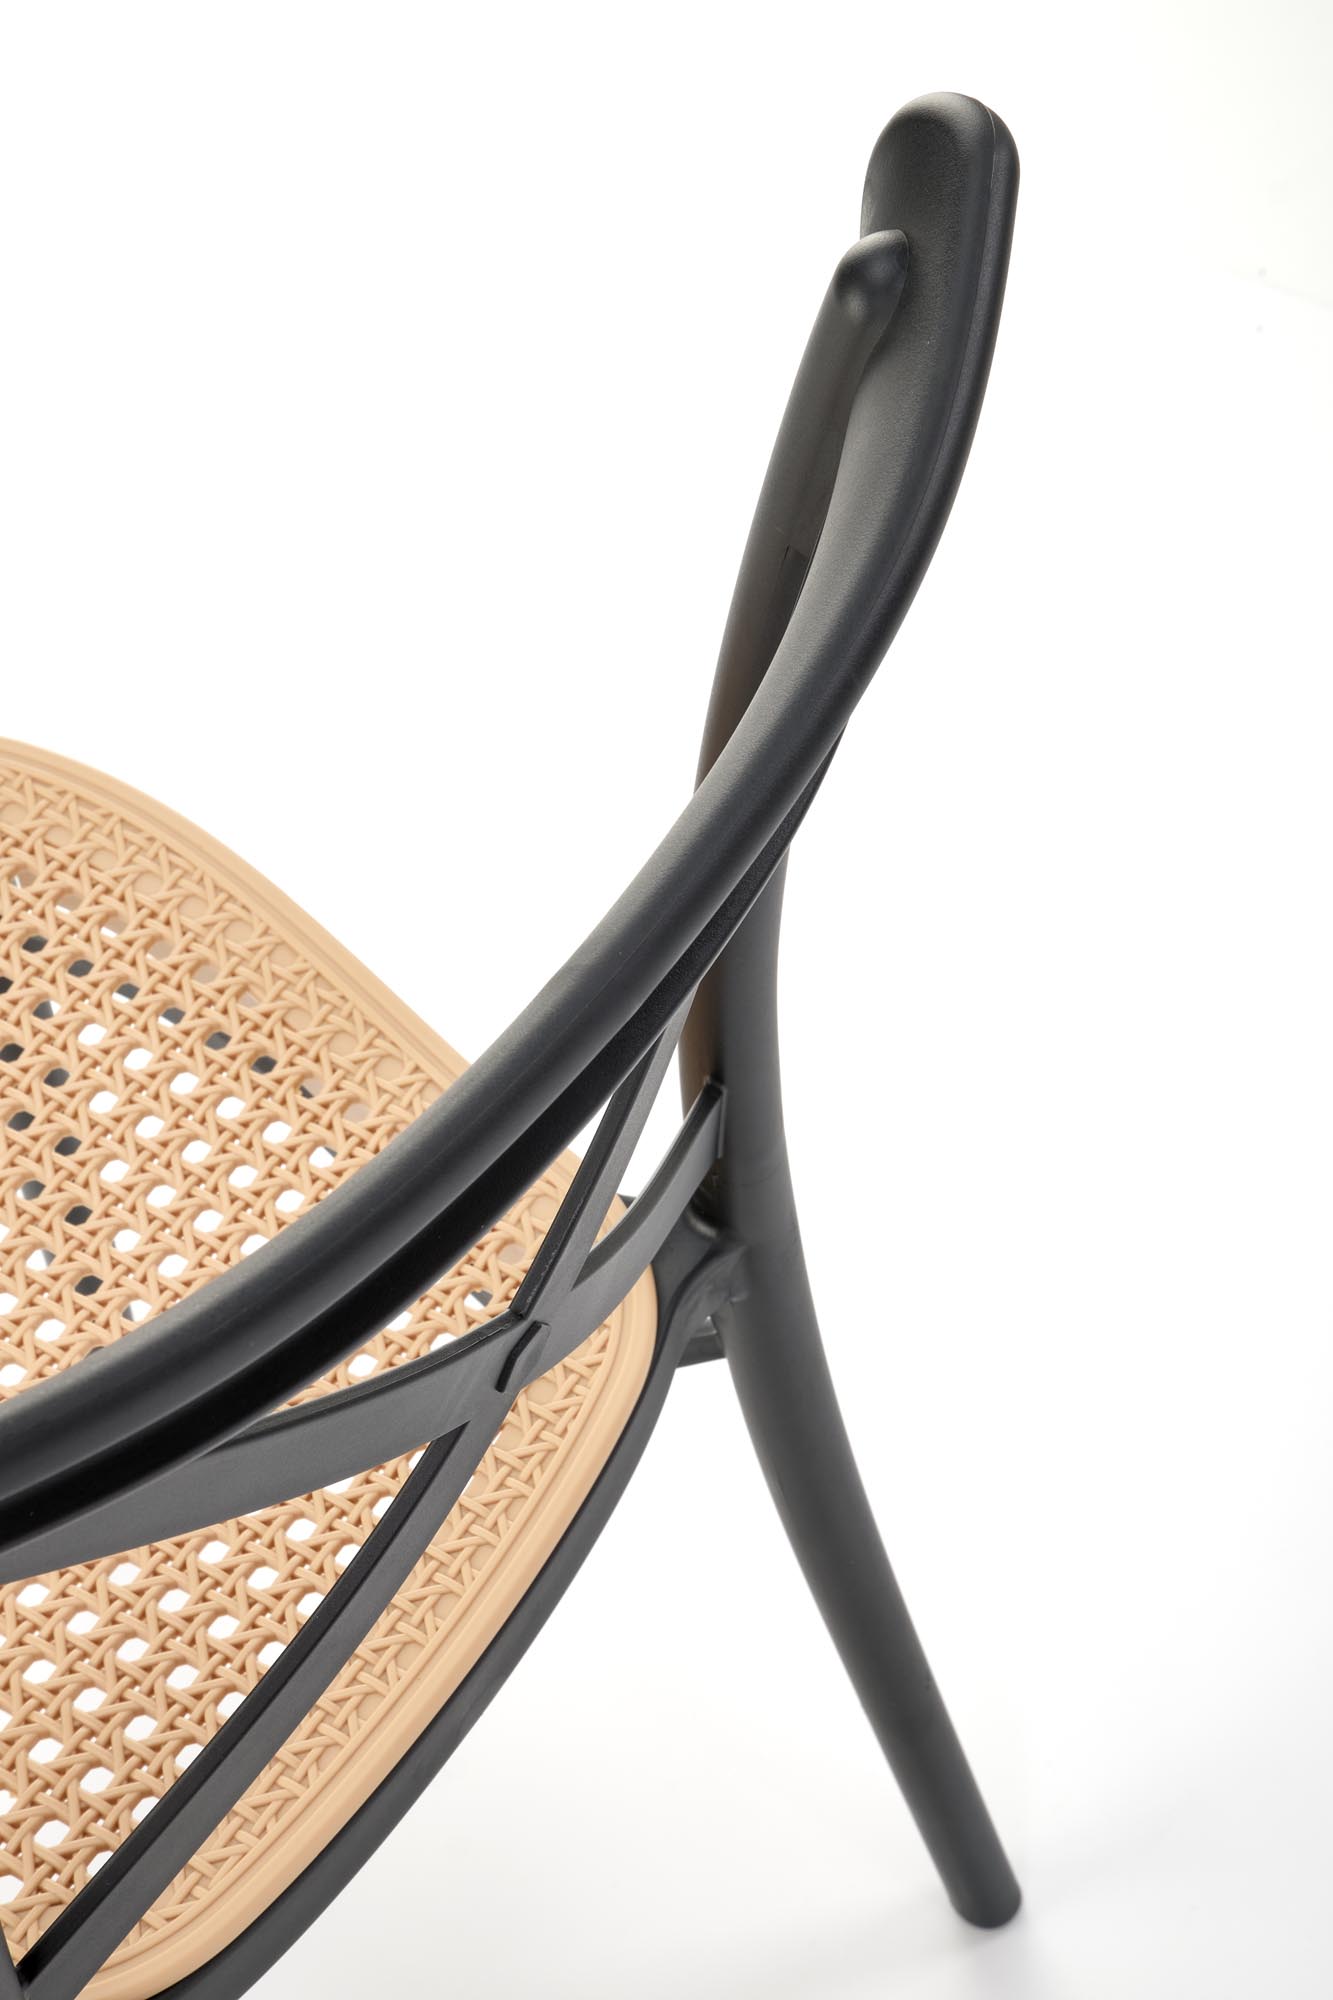 Krzesło z tworzywa sztucznego K512 - czarny / brązowy krzesło z tworzywa sztucznego k512 - czarny / brązowy